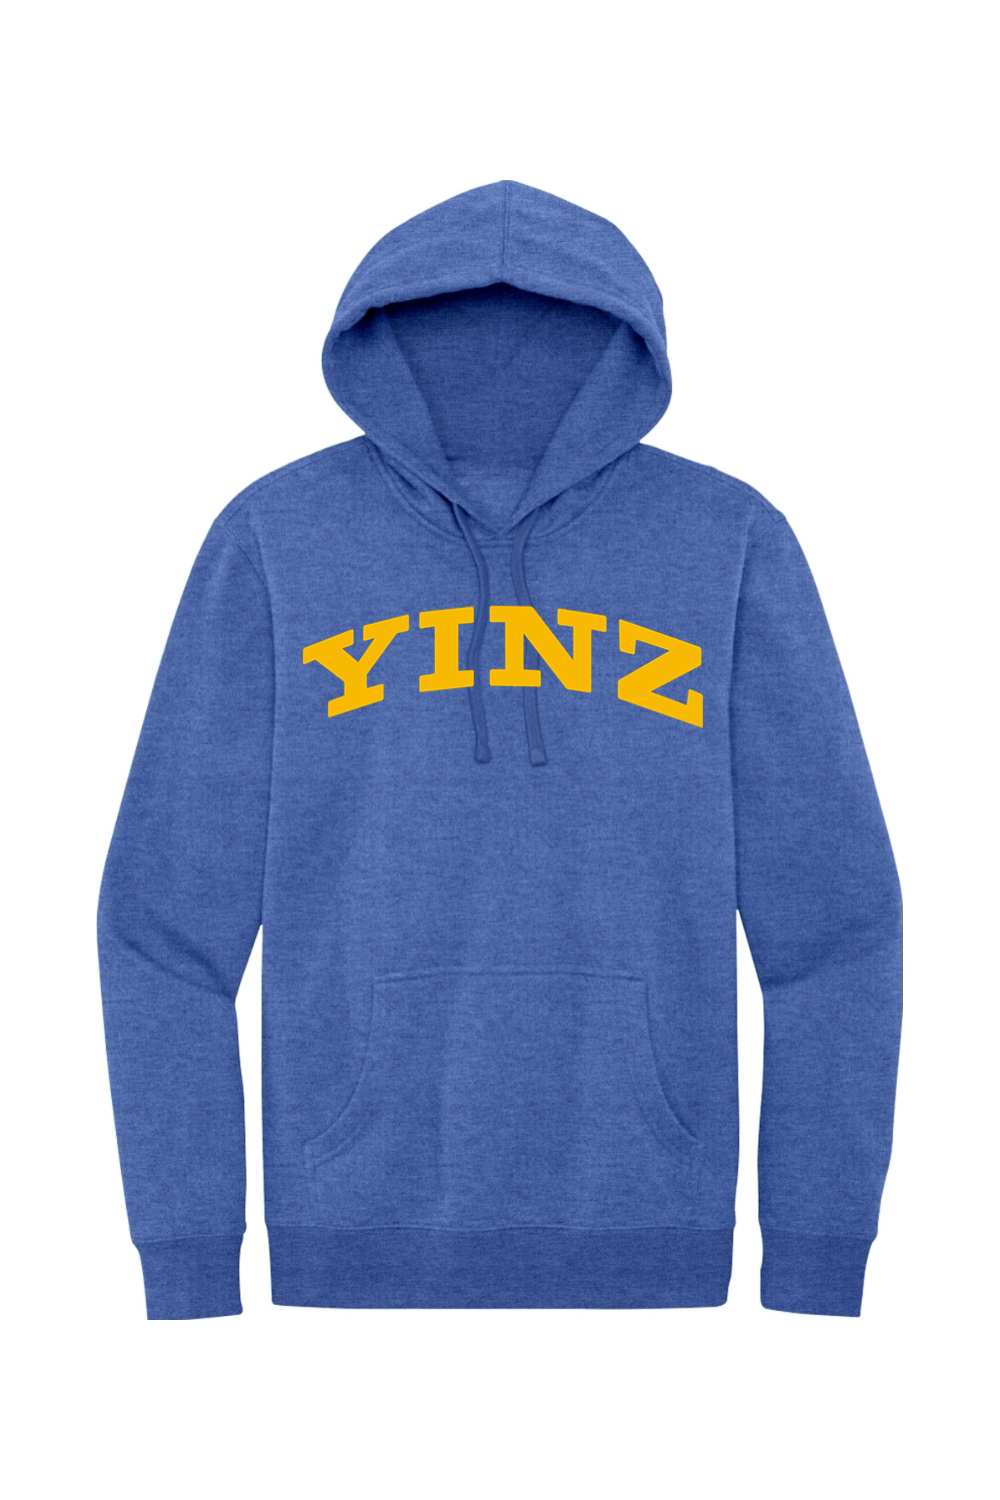 YINZ - Collegiate - Fleece Hoodie - Yinzylvania